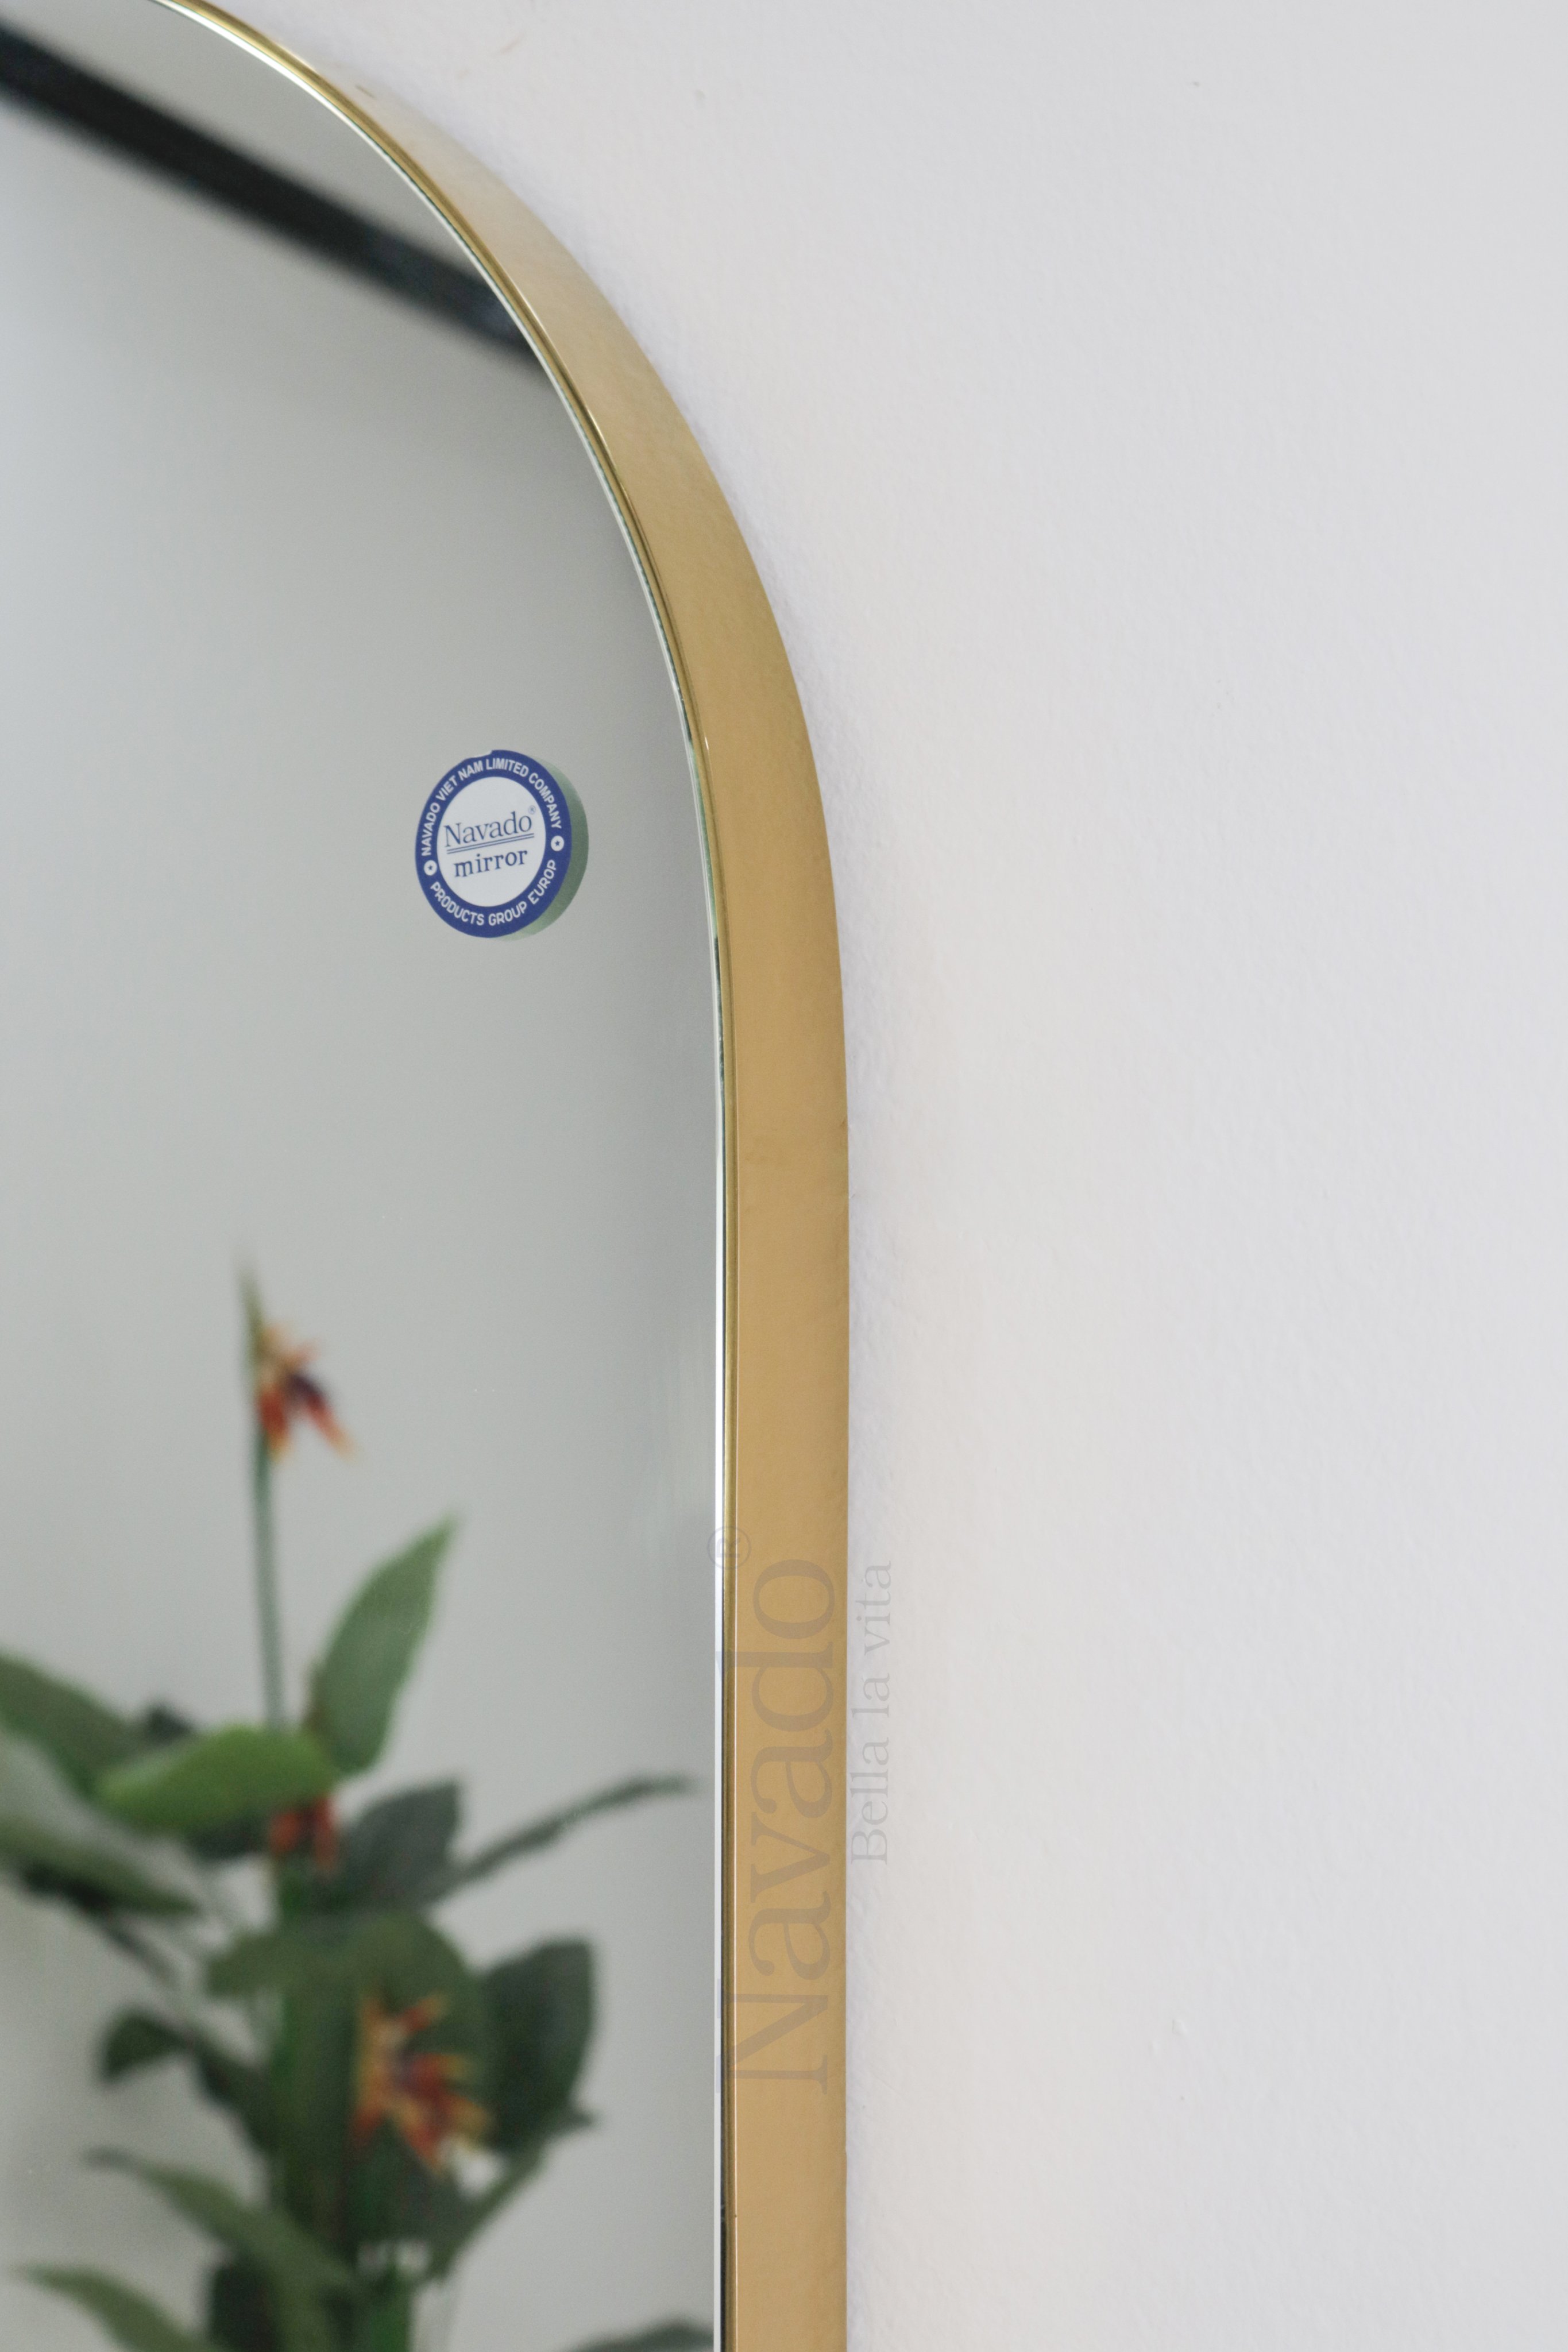 Gương nhà tắm chữ nhật khung inox Gold: Khung inox Gold cùng hình dáng chữ nhật đơn giản nhưng sang trọng là thứ khiến chiếc gương này trở thành một vật dụng không thể thiếu trong căn phòng tắm của bạn. Hãy để chiếc gương này làm nổi bật sự sang trọng và đẳng cấp của phòng tắm chính bạn.